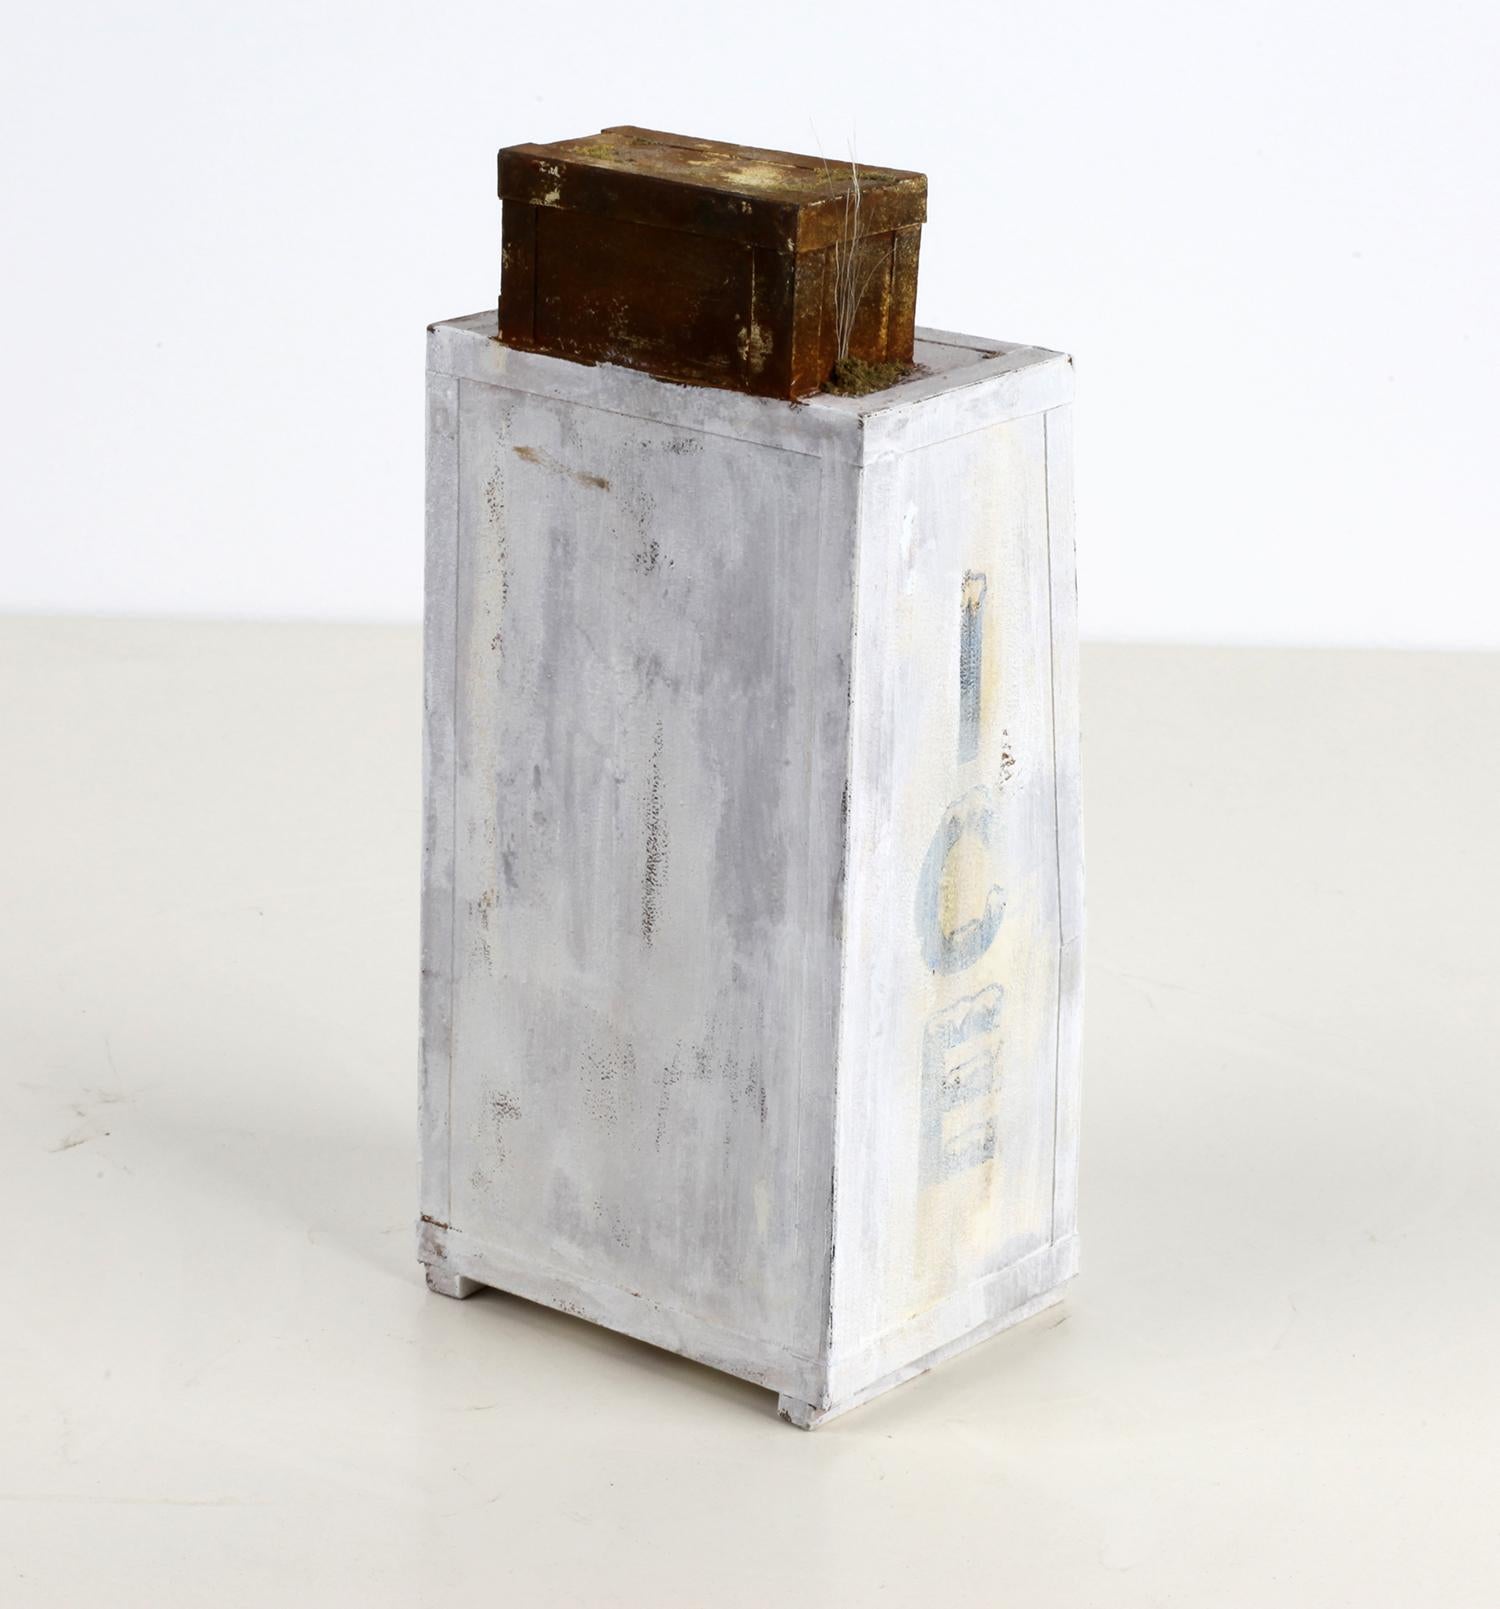 Broken Ice Box - Gray Still-Life Sculpture by Drew Leshko